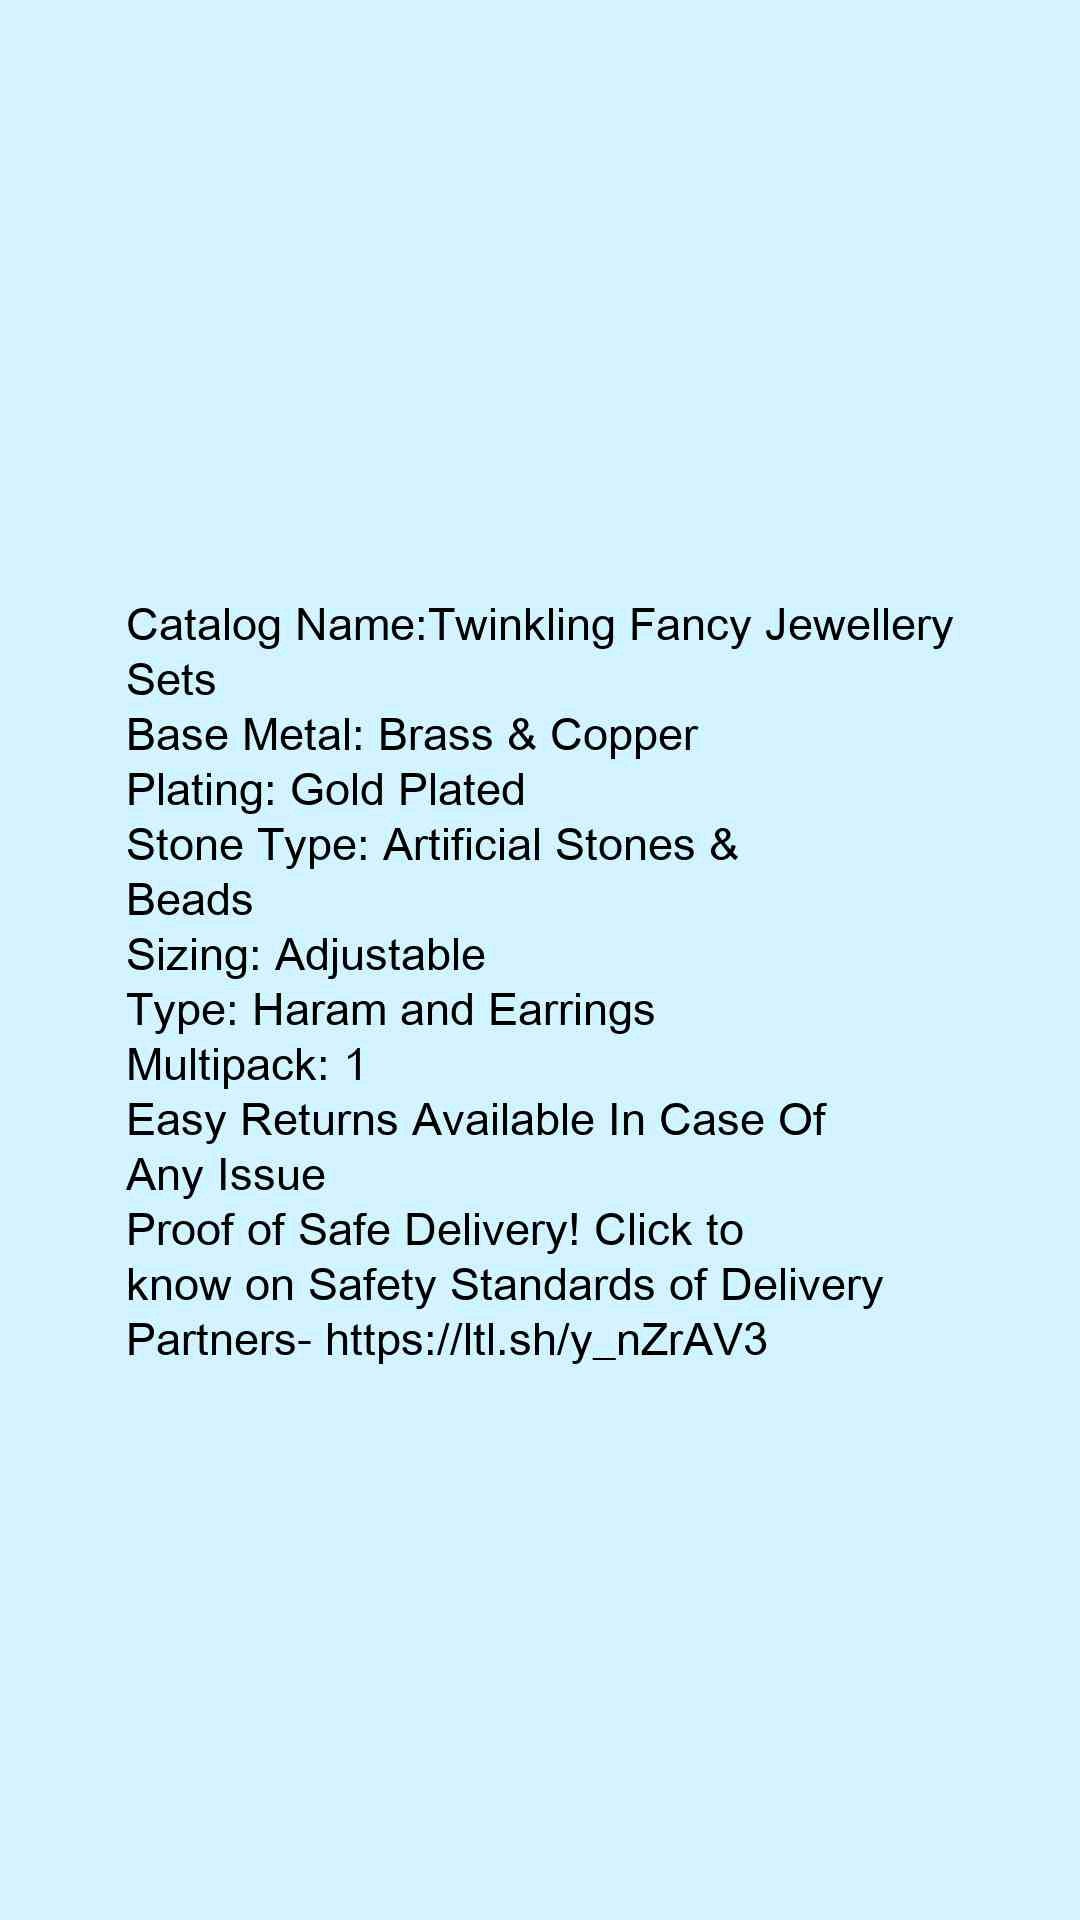 Twinkling Fancy Jewellery Sets